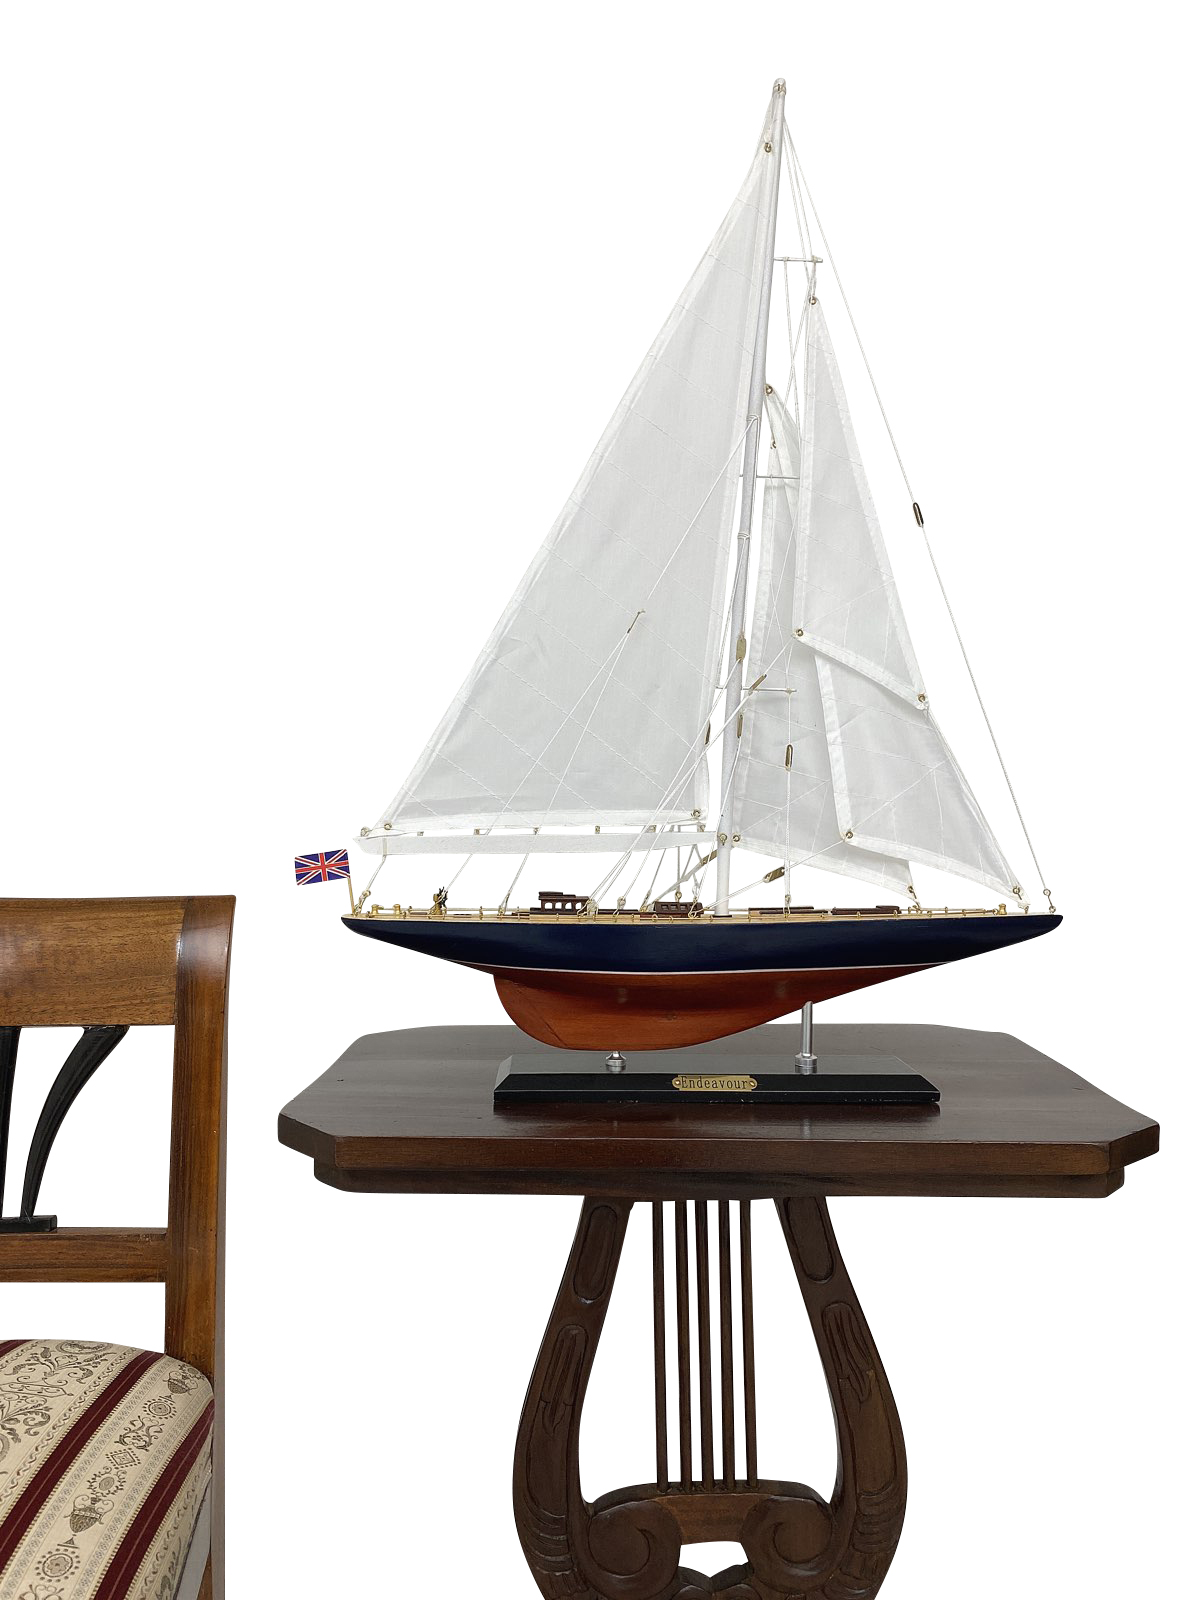 Modellschiff Endeavour Schiff Segelschiff Maritim Antik-Stil kein Bausatz 